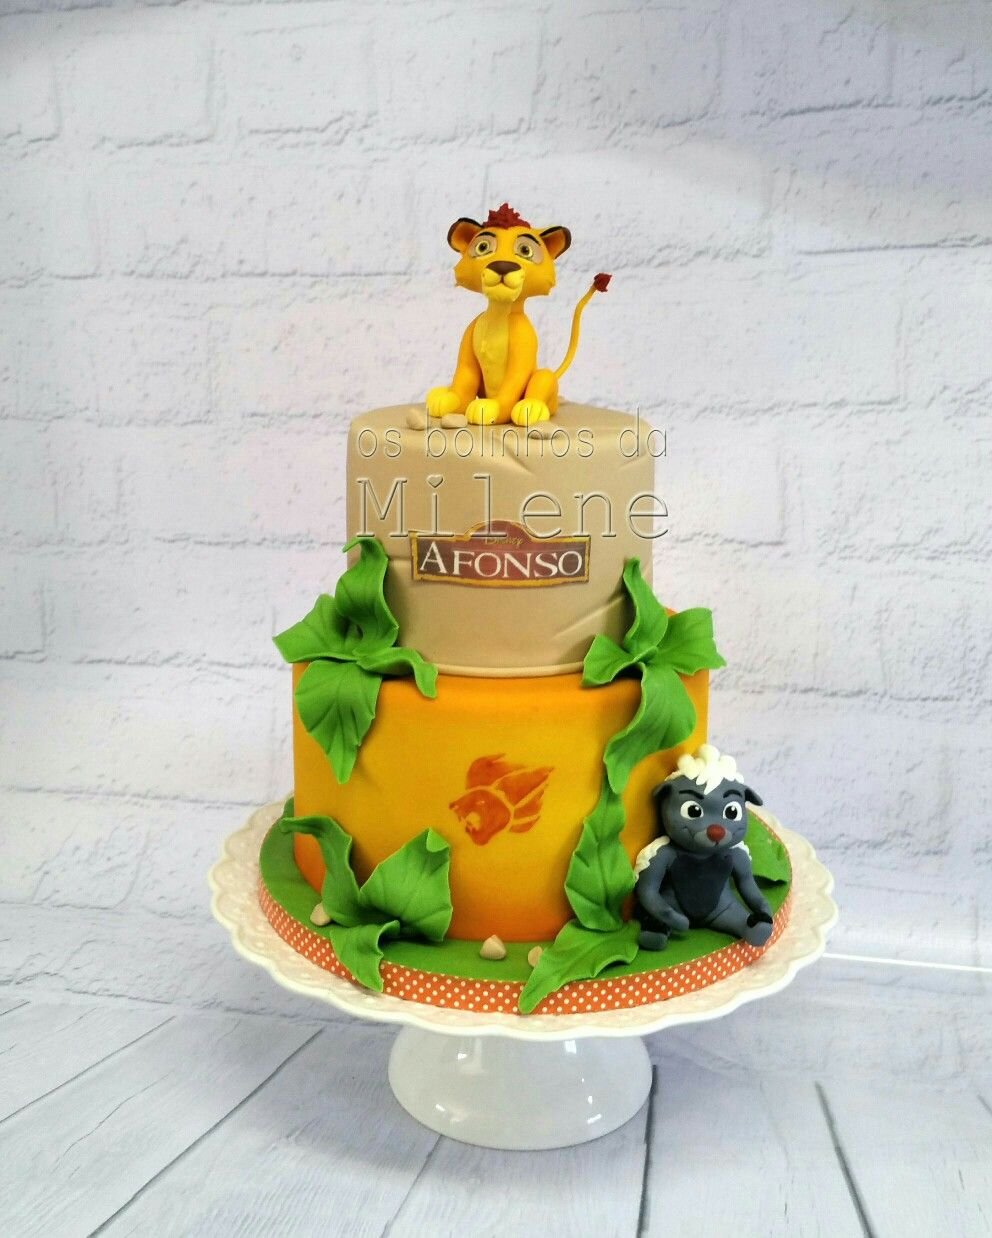 Фигурка львенка на торт